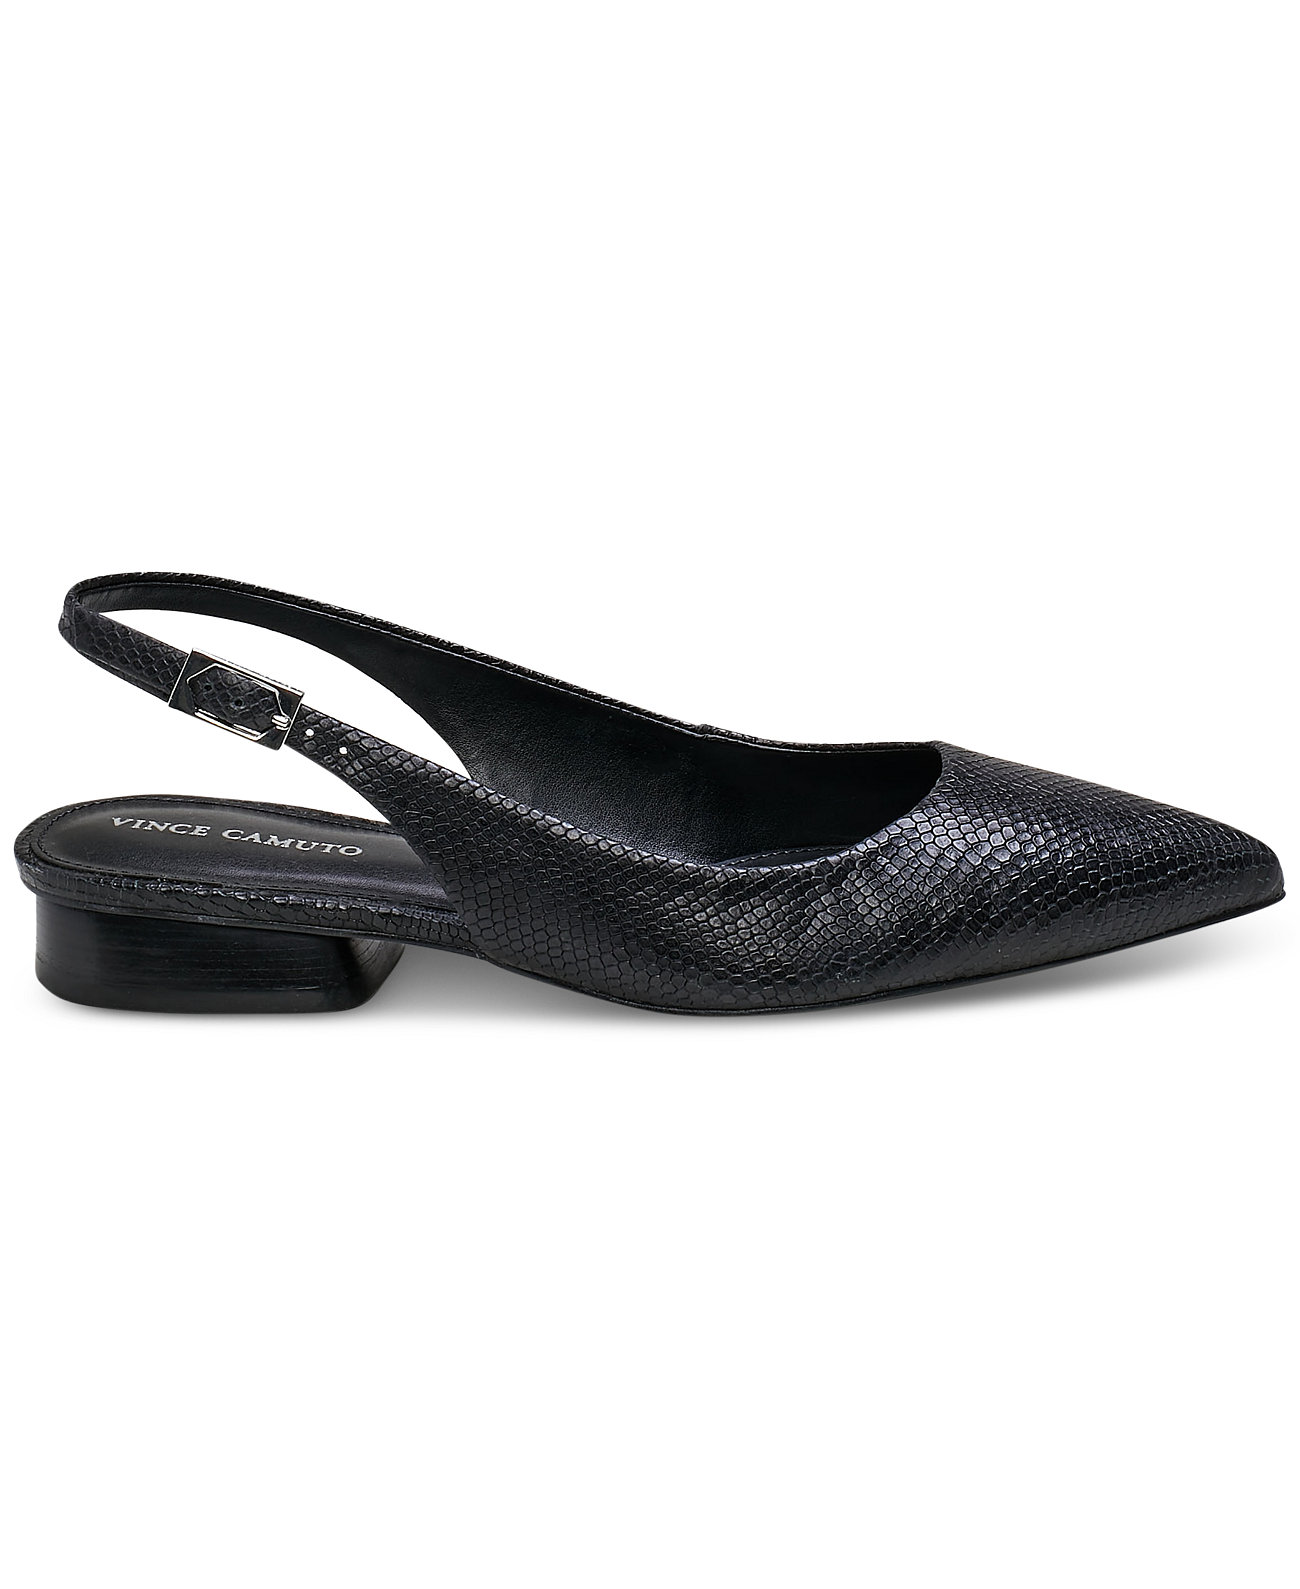 Женские туфли на плоской подошве с ремешком на пятке Jesander с острым носком Vince Camuto